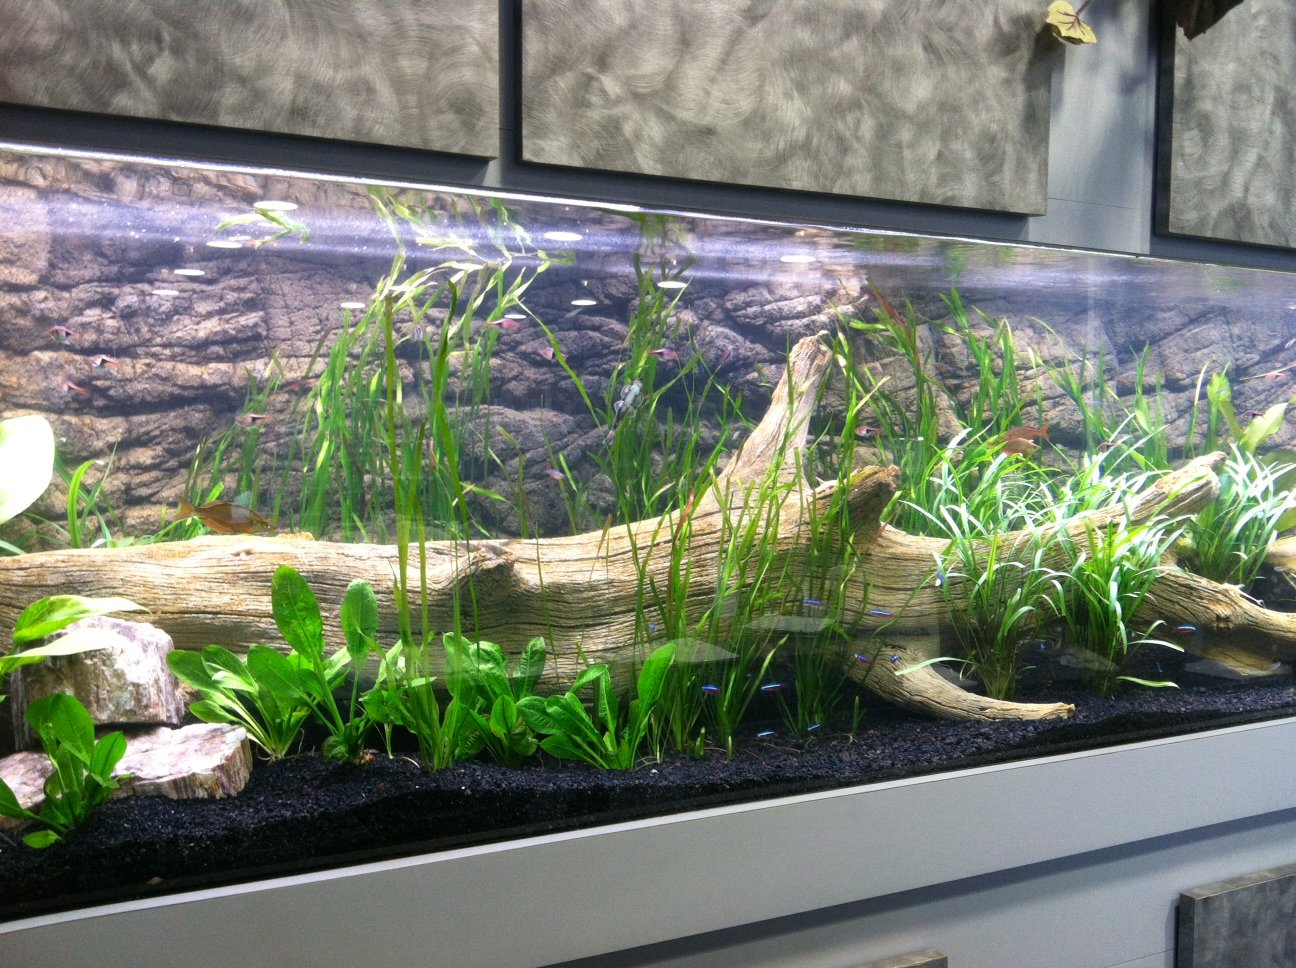 Can You Use Terrarium Wood in Aquarium?